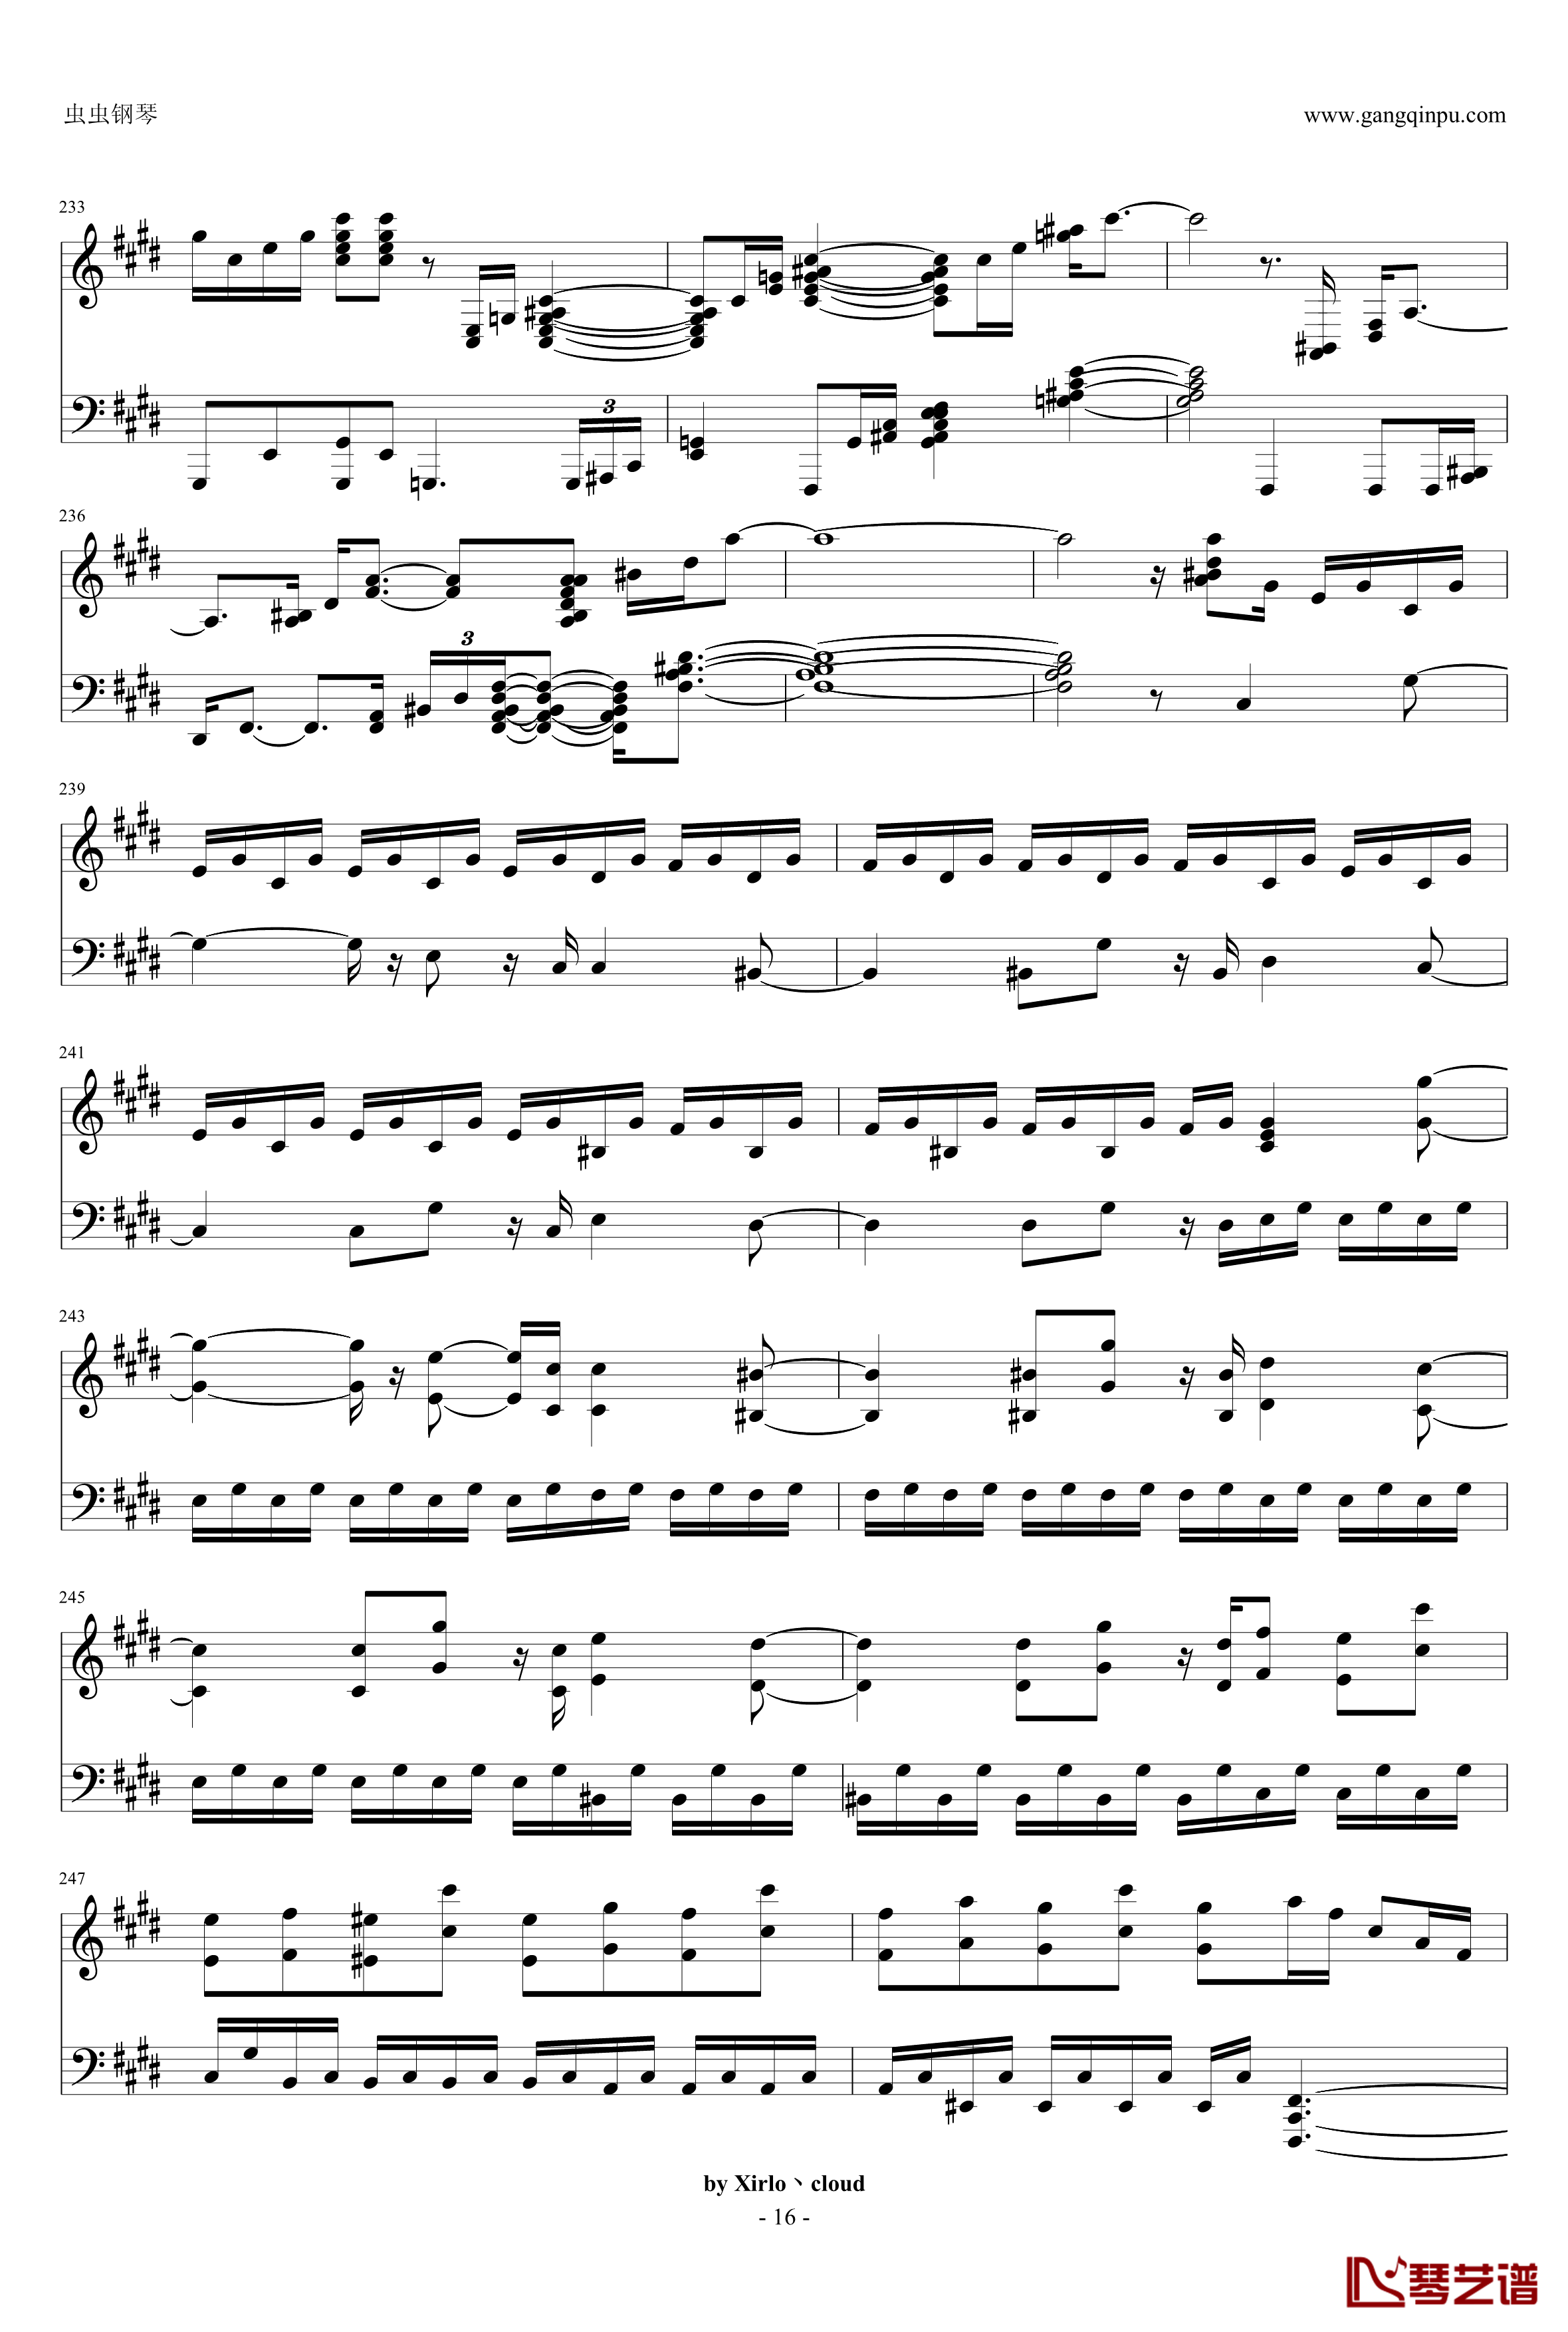 月光奏鸣曲钢琴谱-改编版-贝多芬-beethoven16